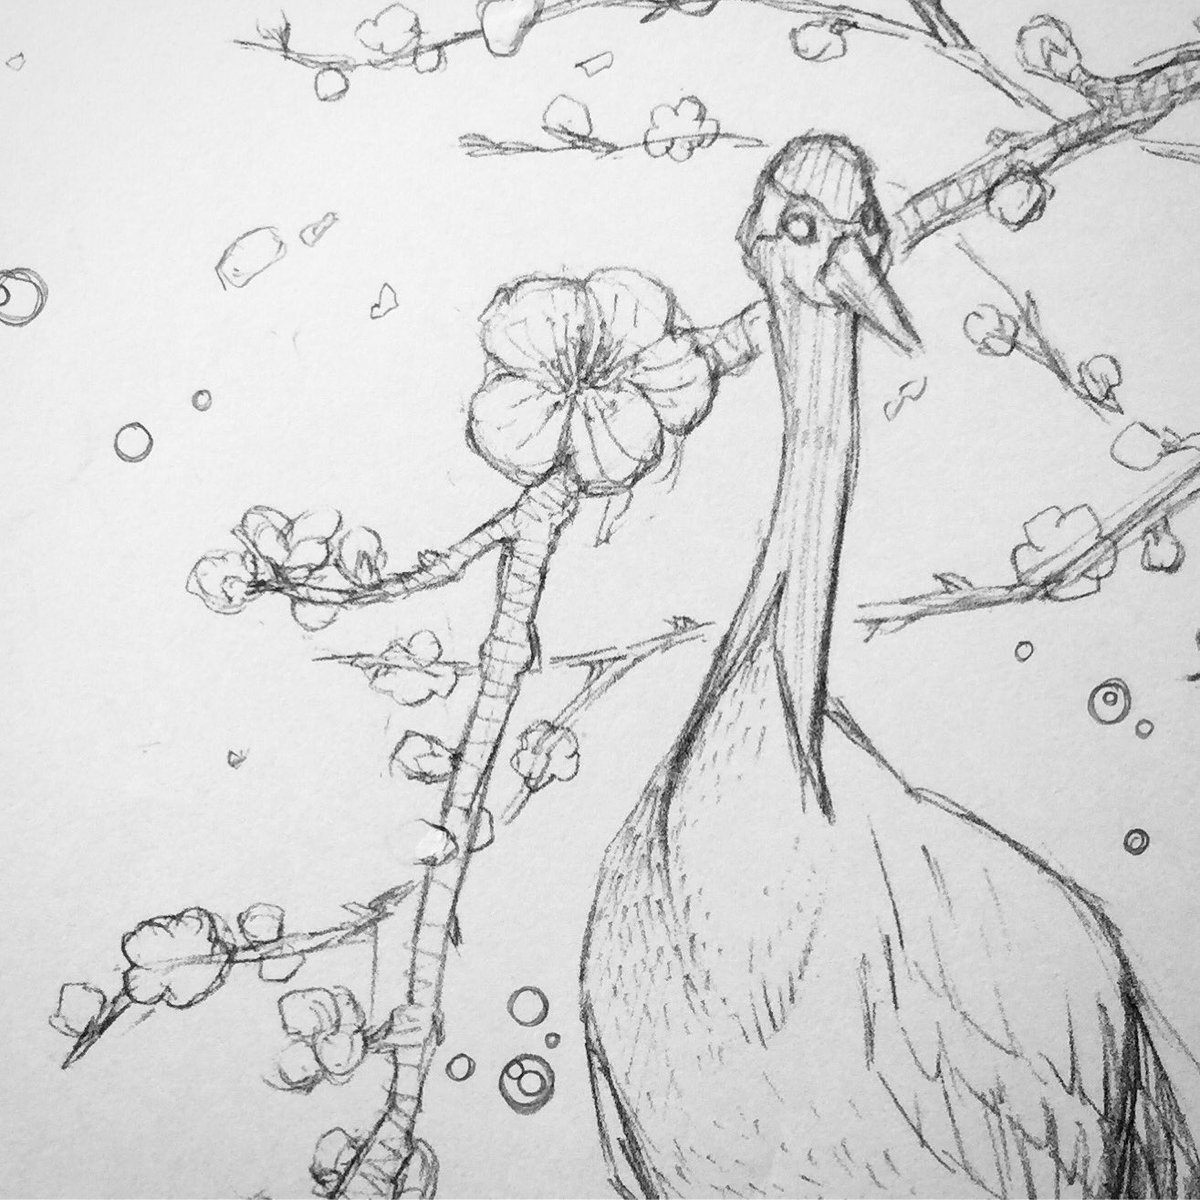 クロセシンゴ على تويتر 梅と丹頂の下絵 絵 イラスト 鉛筆 モノクロ 白黒 梅 花 丹頂 鶴 鳥 Illustration Art Artwork Drawing Blackandwhite Japaneseapricot Flower Crane Bird T Co 9q6ra7abiq